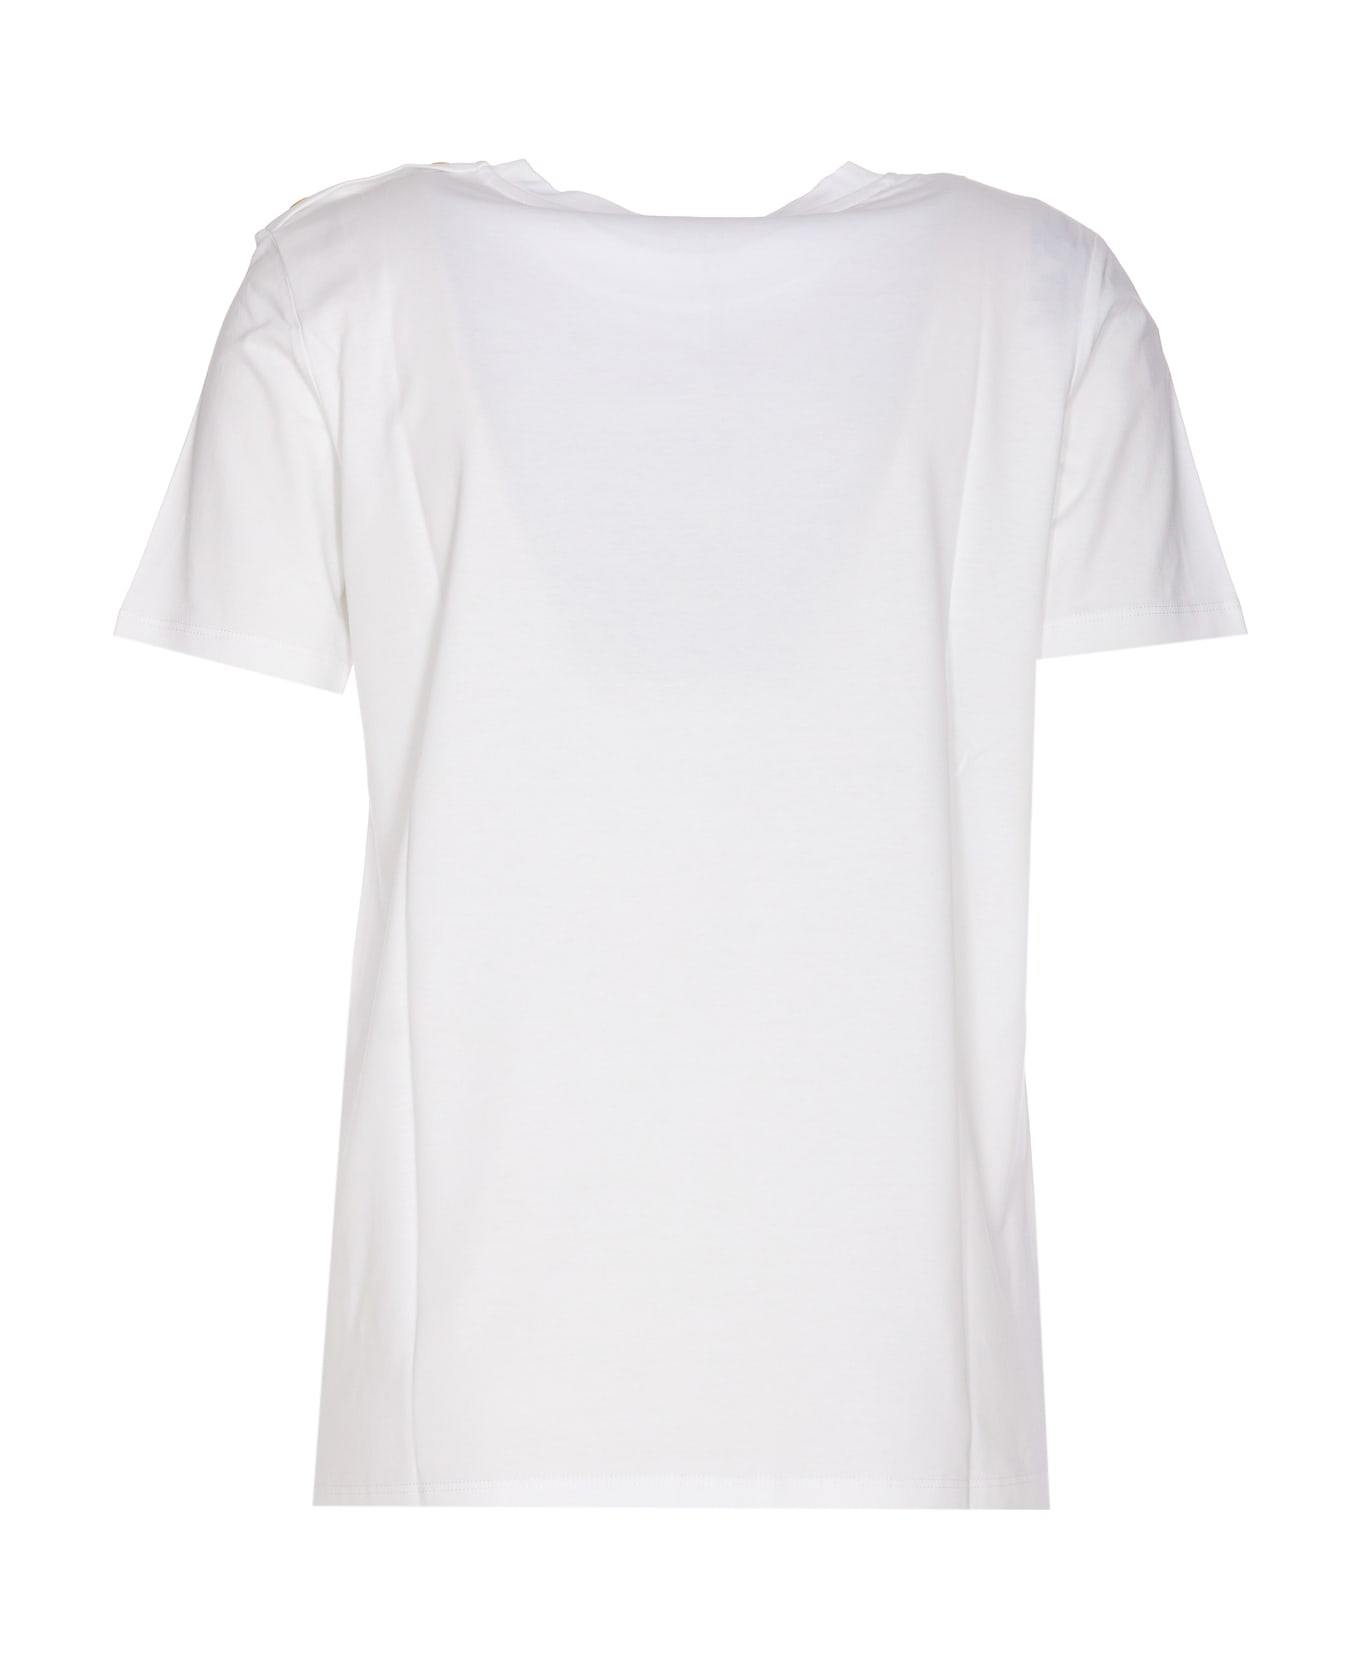 Balmain Cotton Crew-neck T-shirt - White